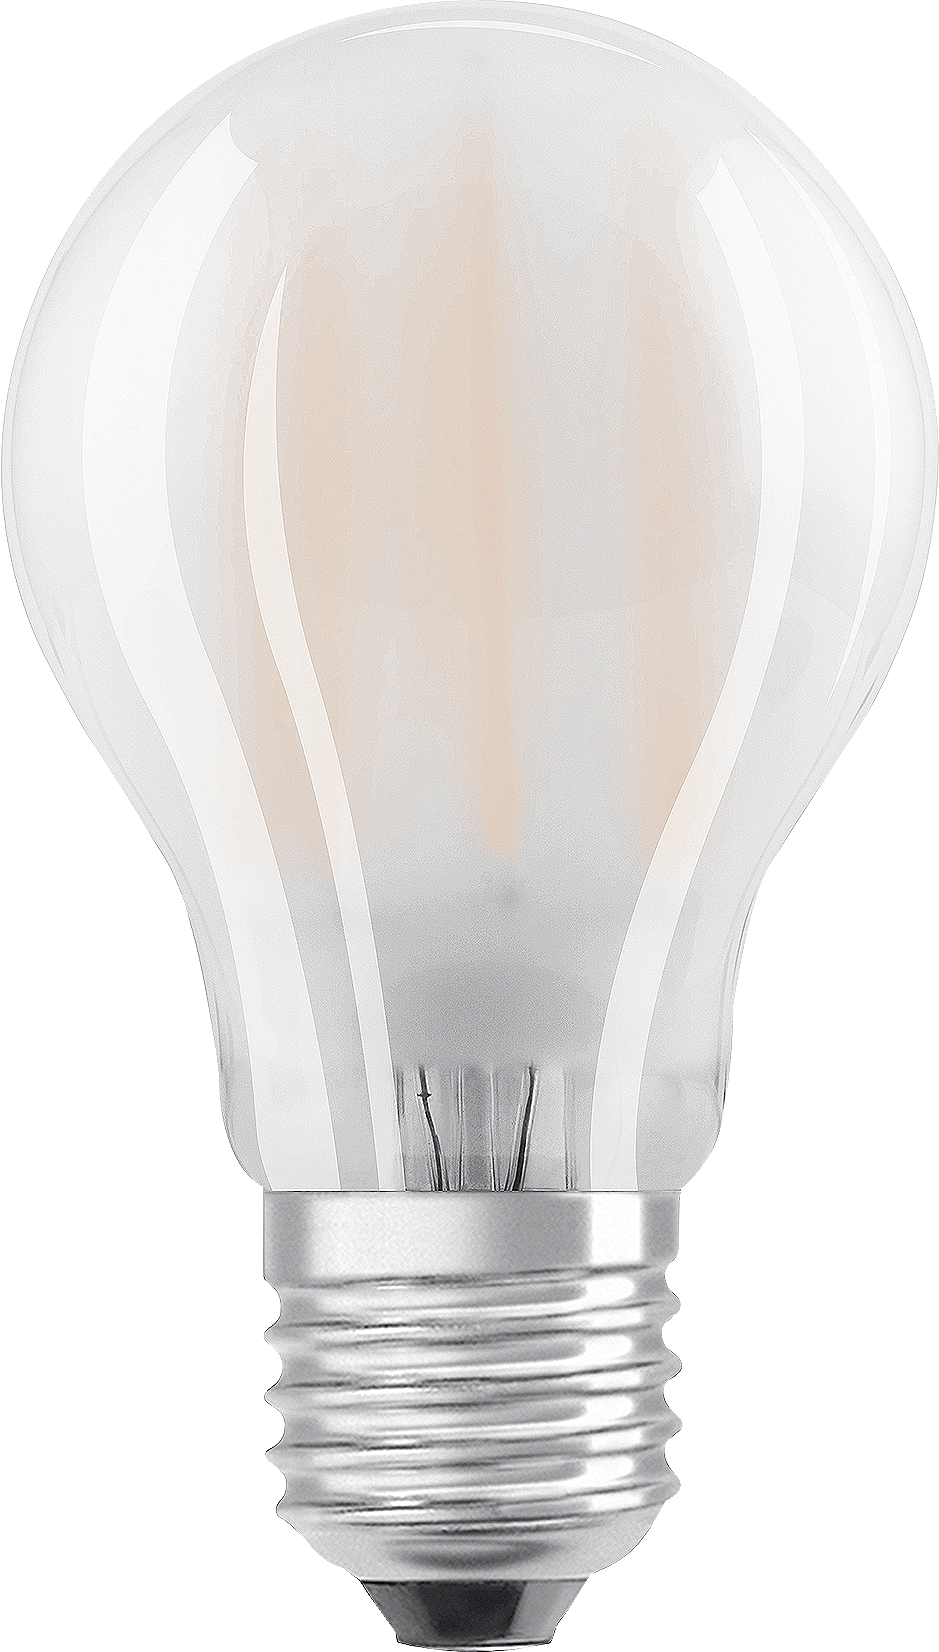 OSRAM LED-Lampe Base Classic A E27, 7.0W, 806lm, warm white, 5 Stk. - Lampen, Leuchten